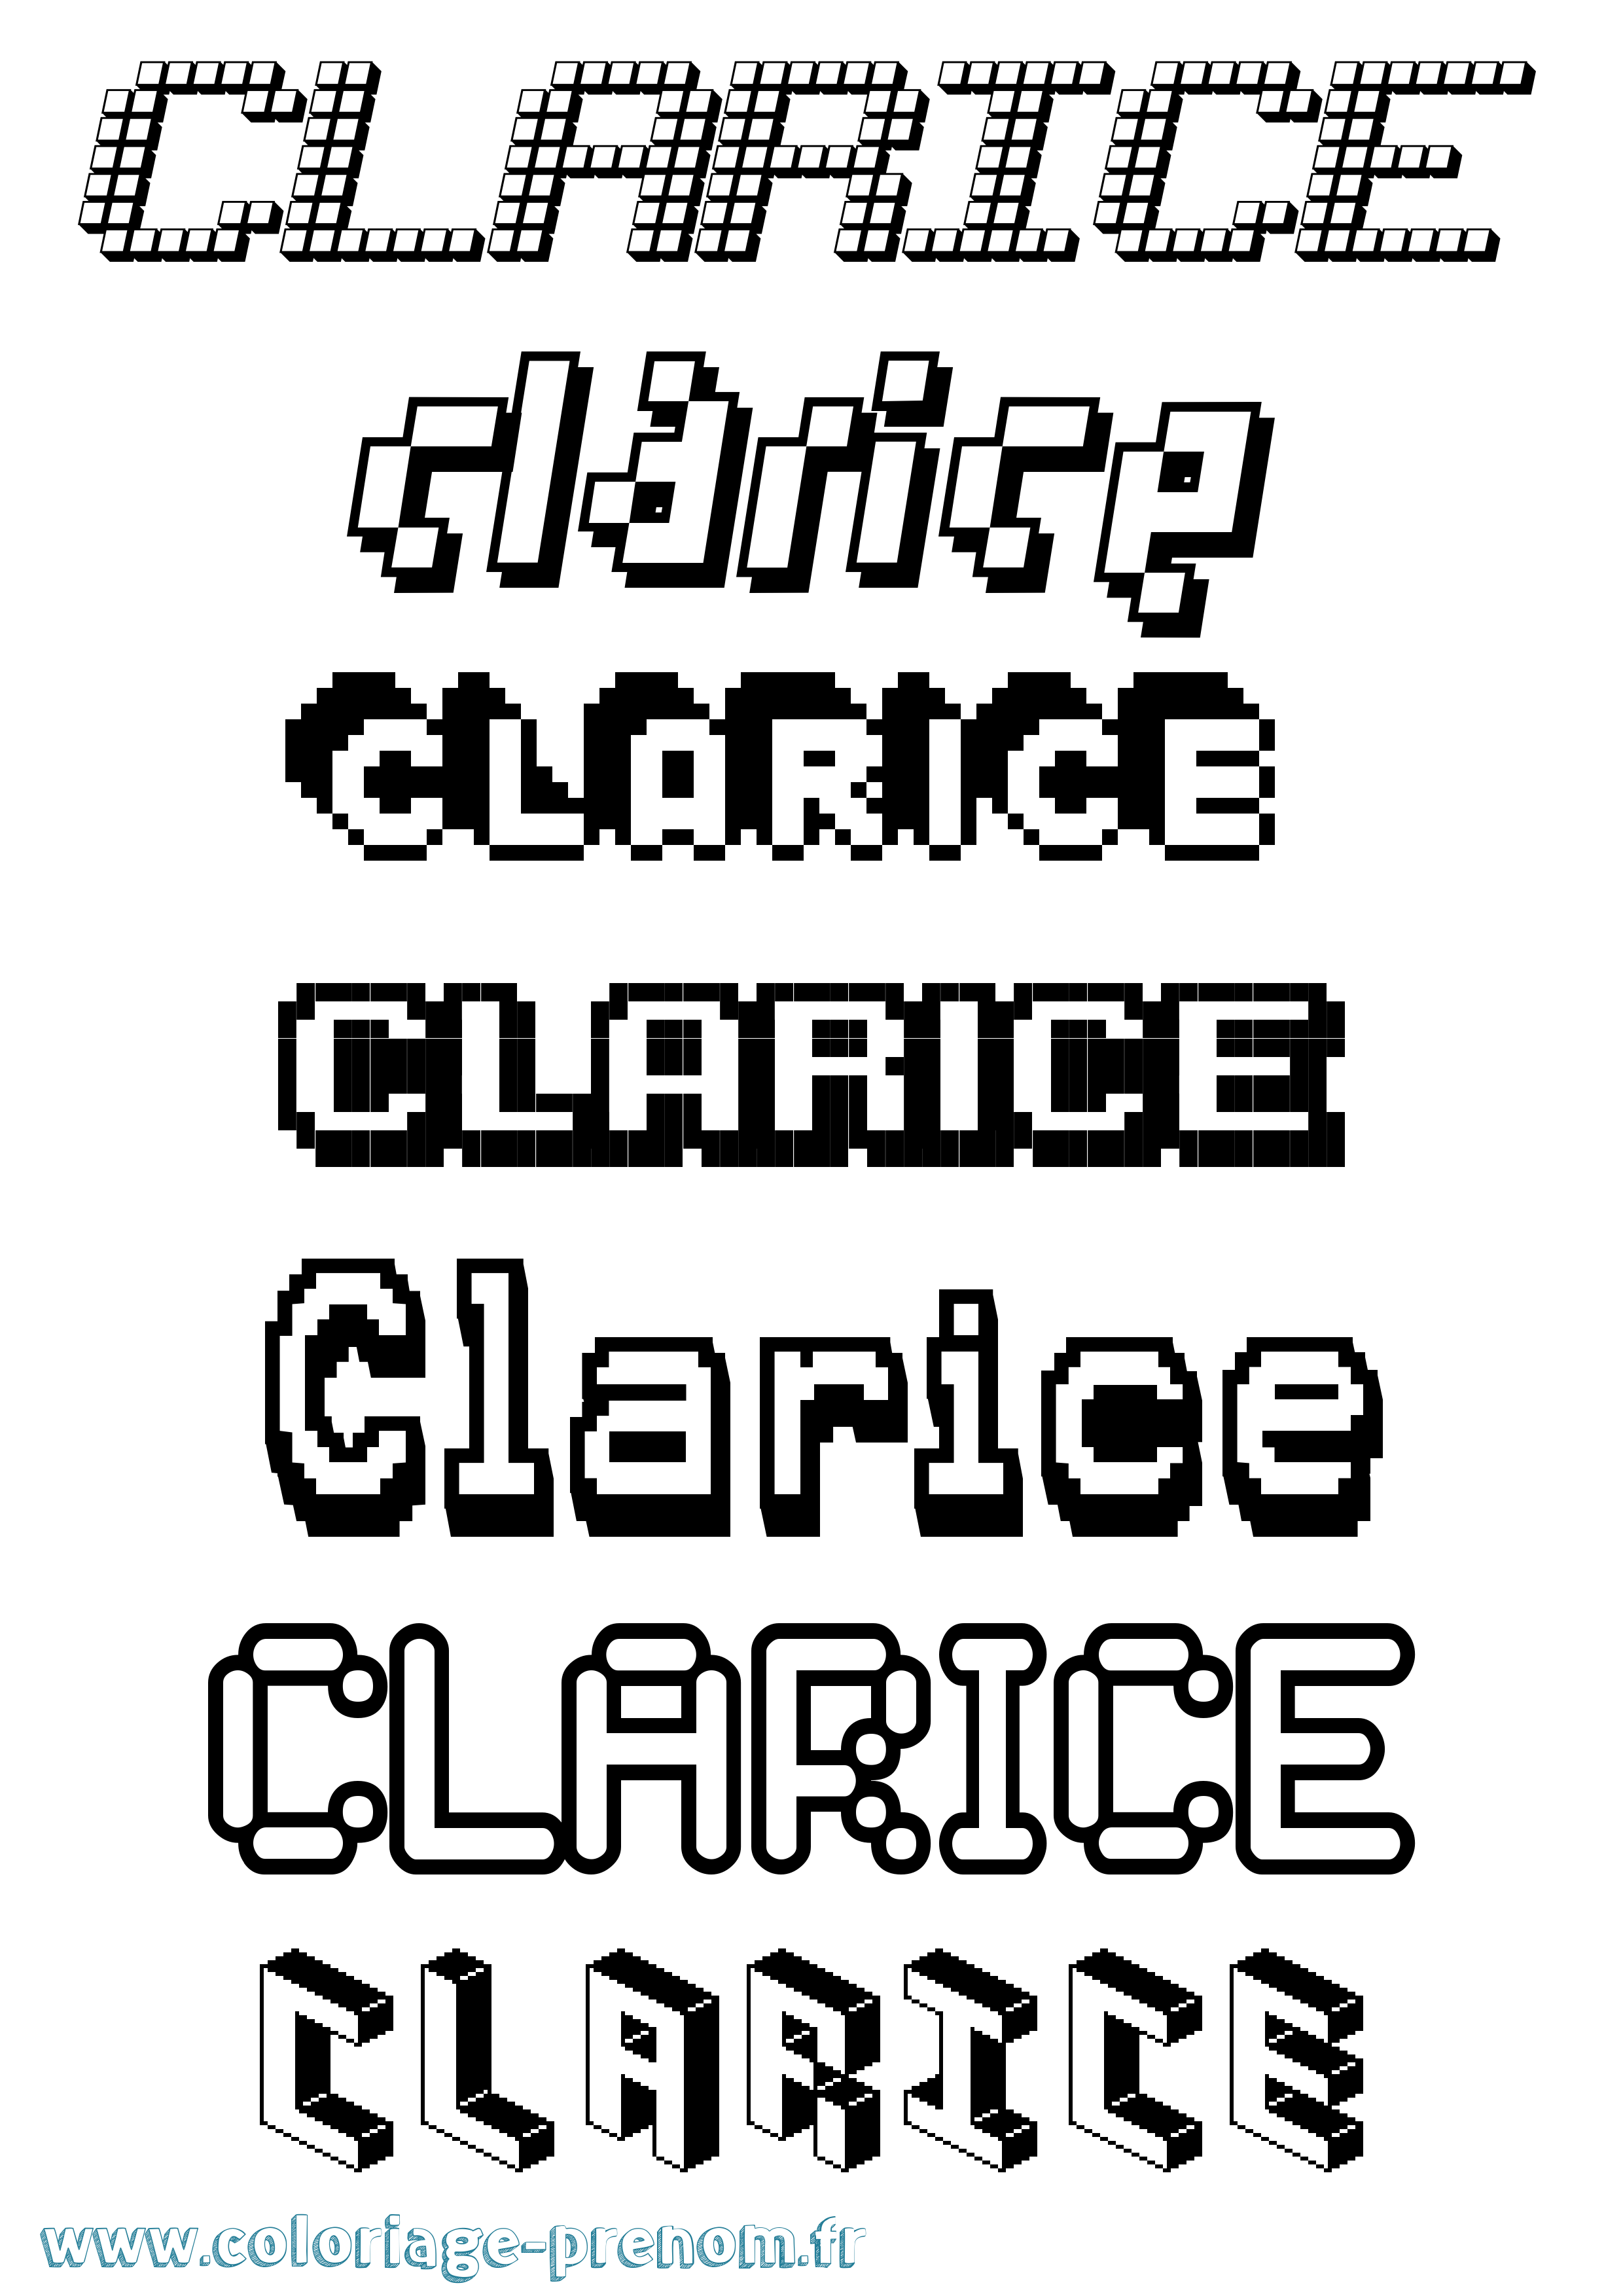 Coloriage prénom Clarice Pixel